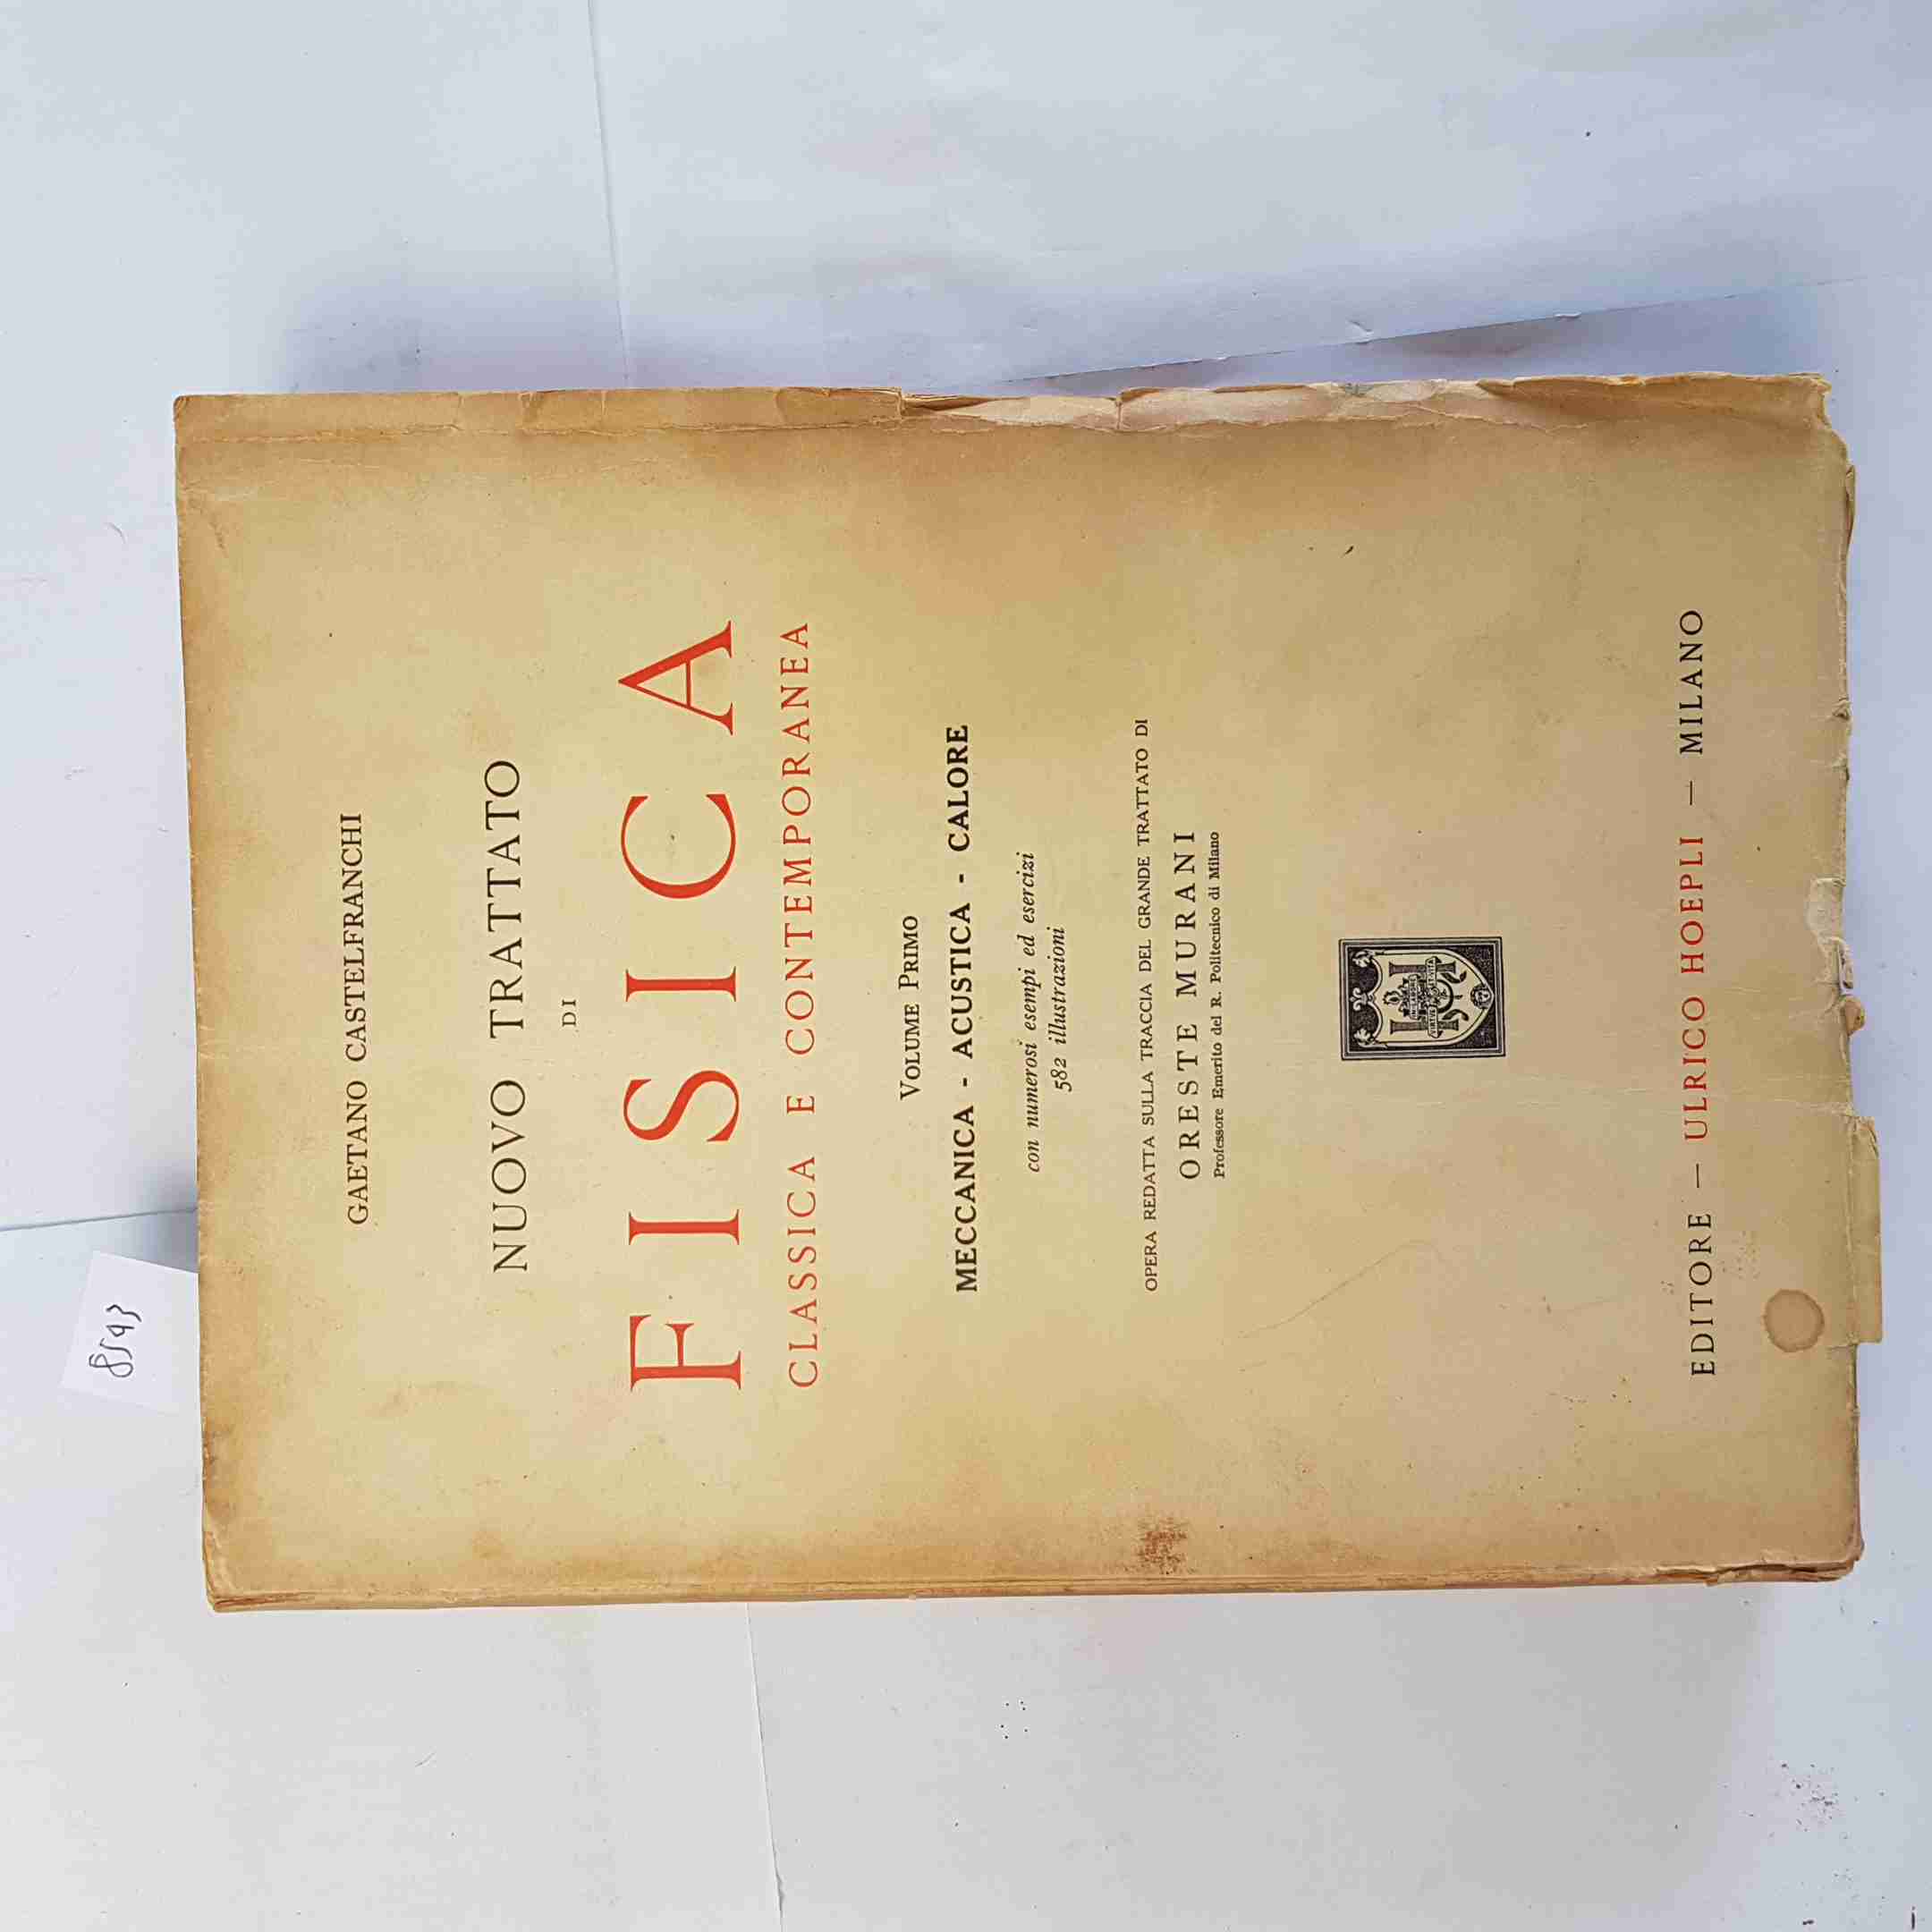 NUOVO TRATTATO DI FISICA CLASSICA E CONTEMPORANEA 1 HOEPLI - CASTELFRANCHI 1937